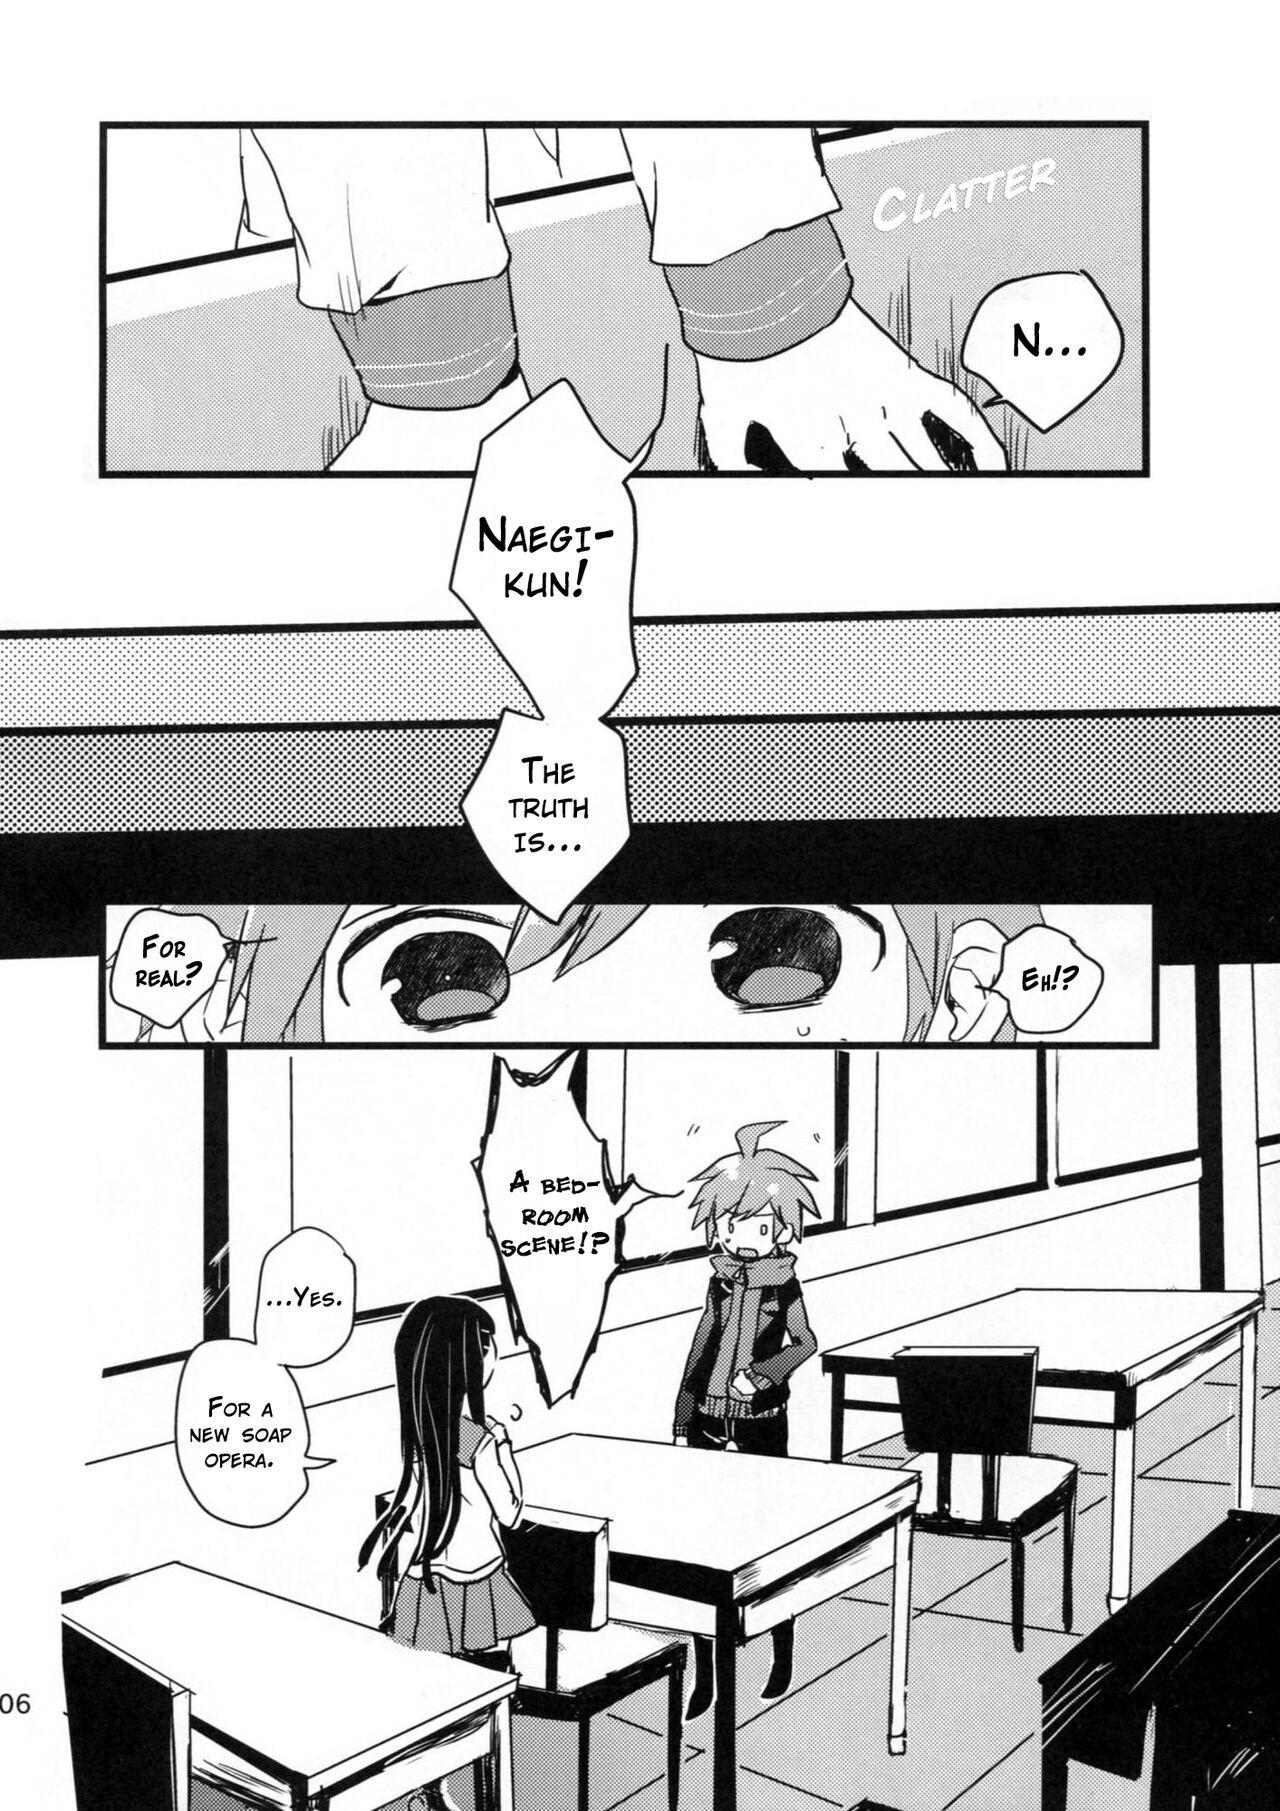 Machine Naegi to Maizono-san ga Tsukiatteru Zentei no Manga - Danganronpa Hot Teen - Page 5